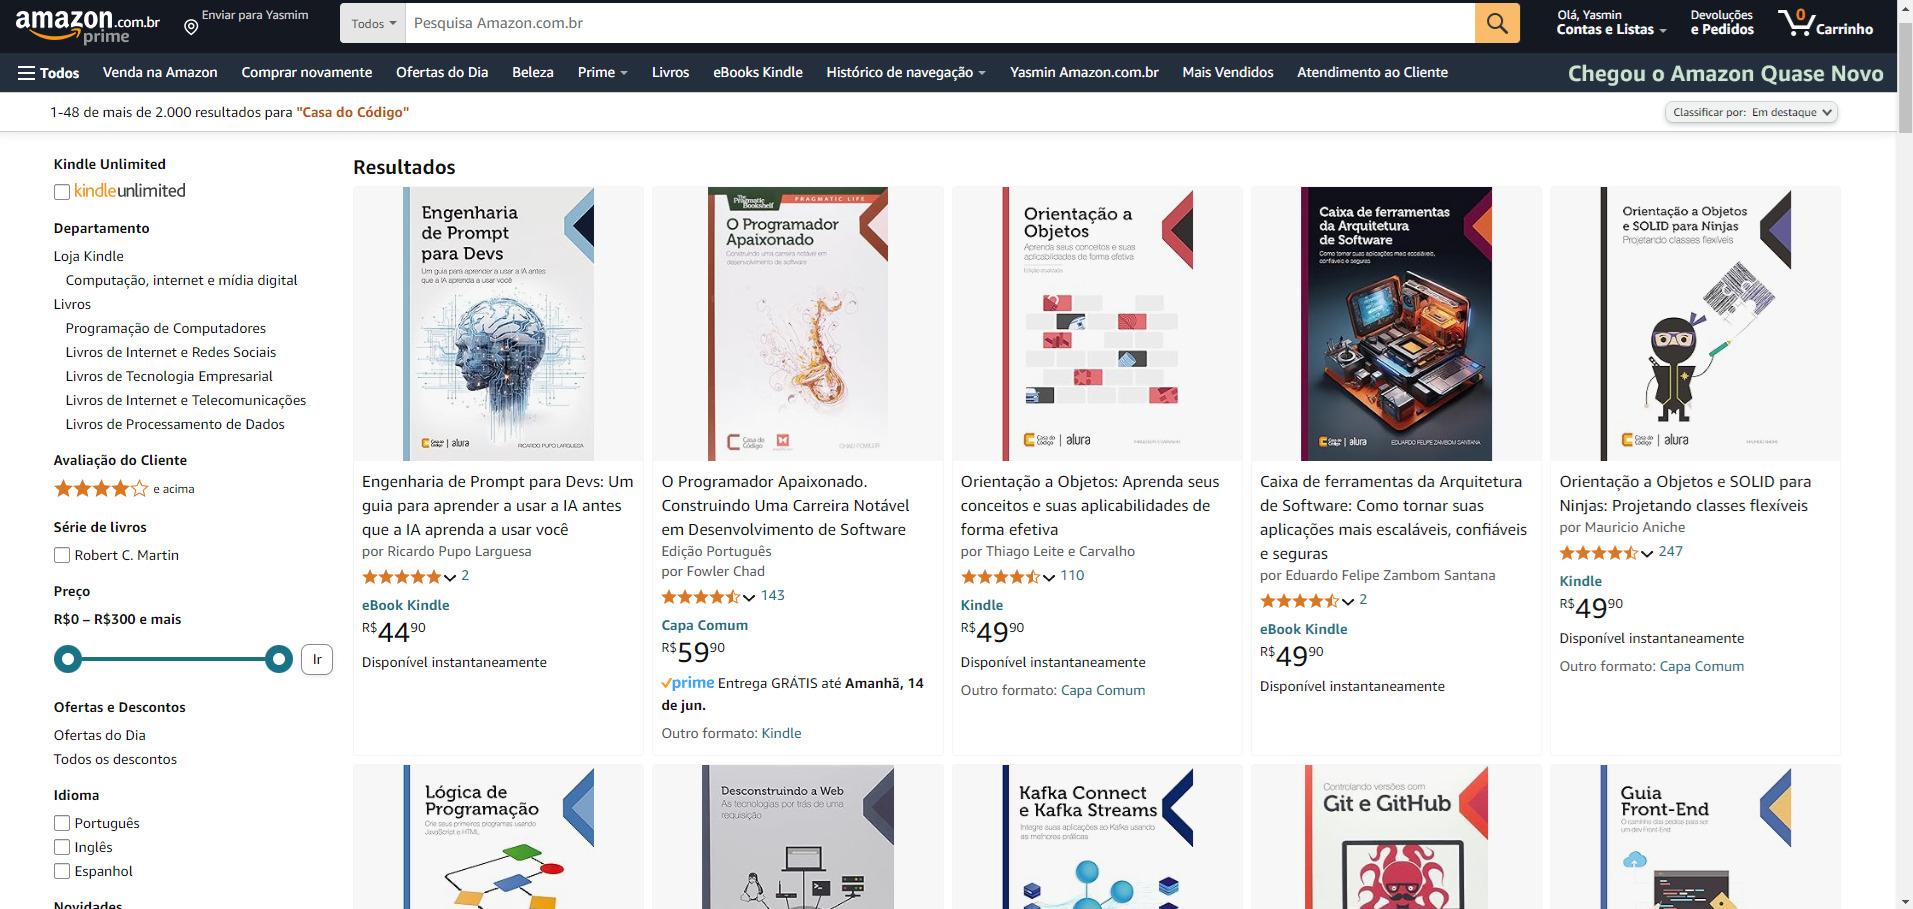 Site da Amazon mostrando preços e disponibilidade de livros da editora Casa do Código.